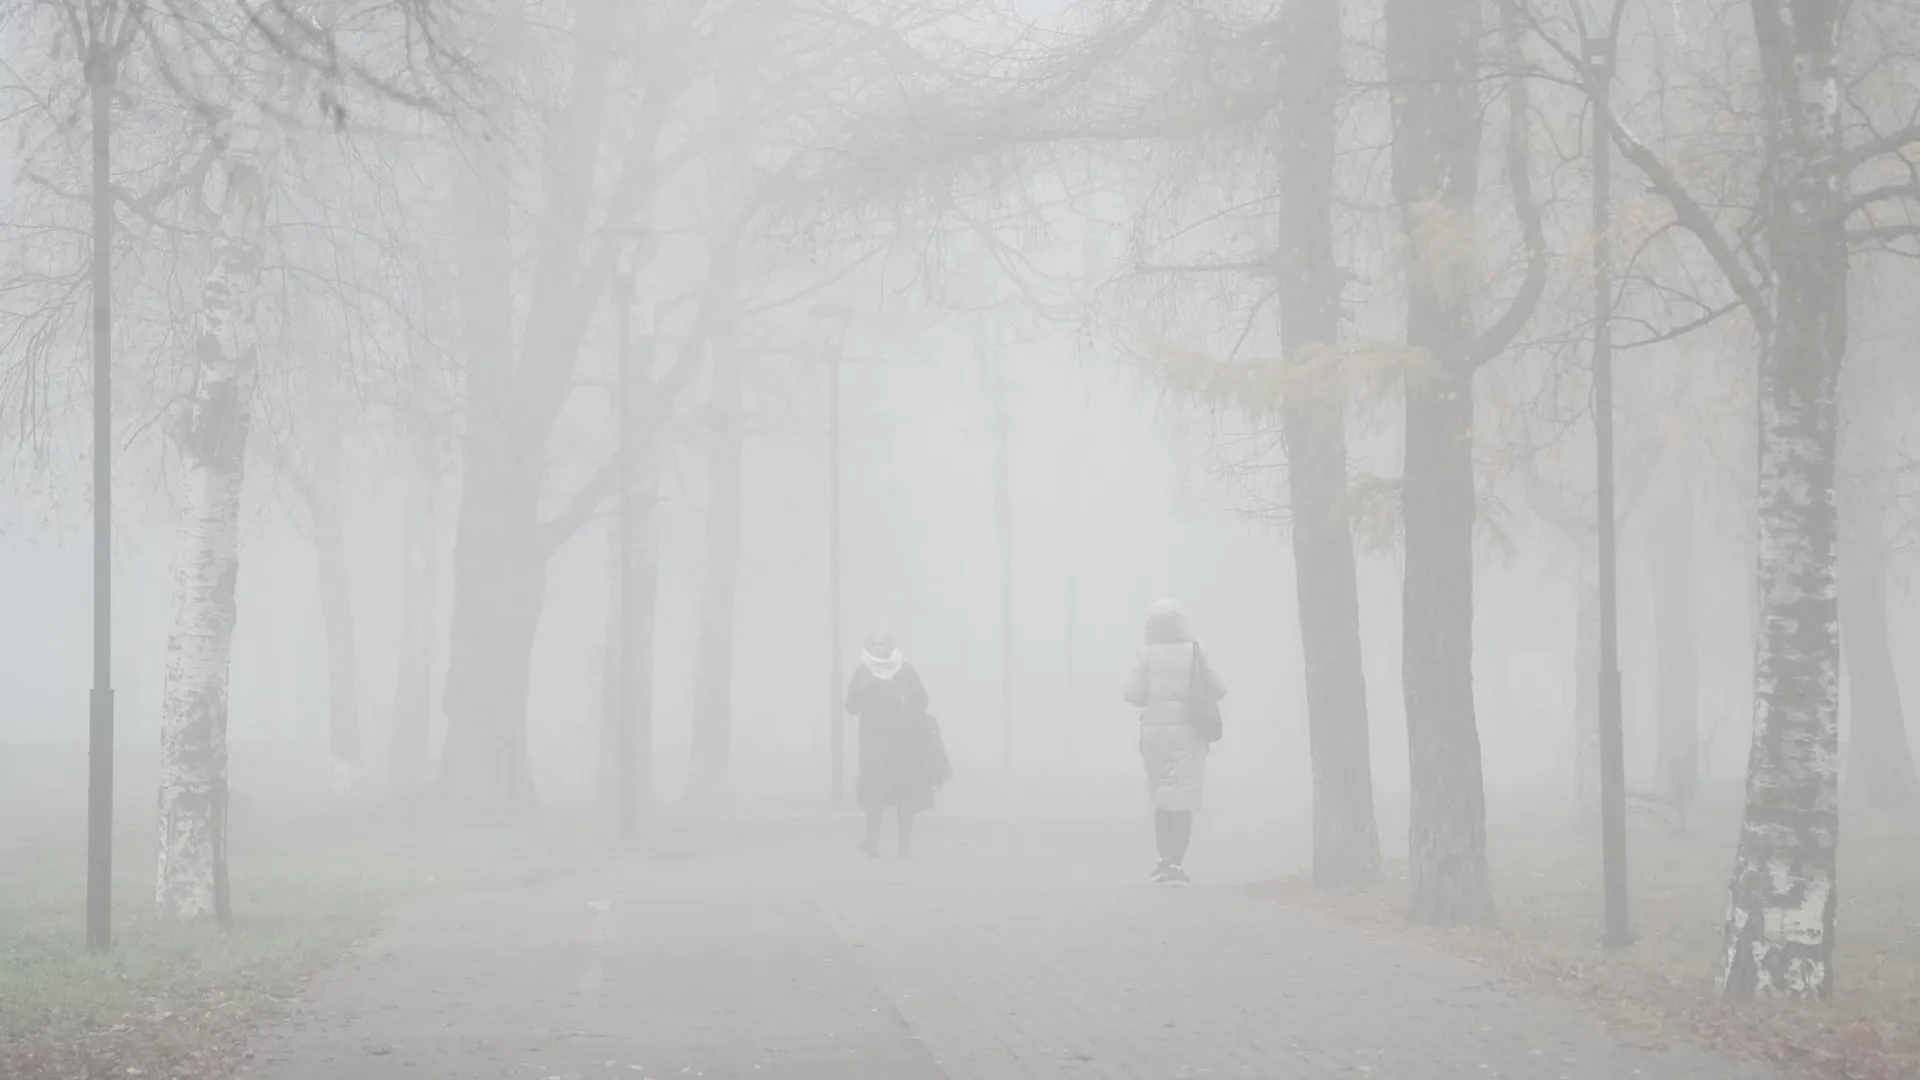 Сайлент Хилл в Москве: как пользователи сети отреагировали на туман